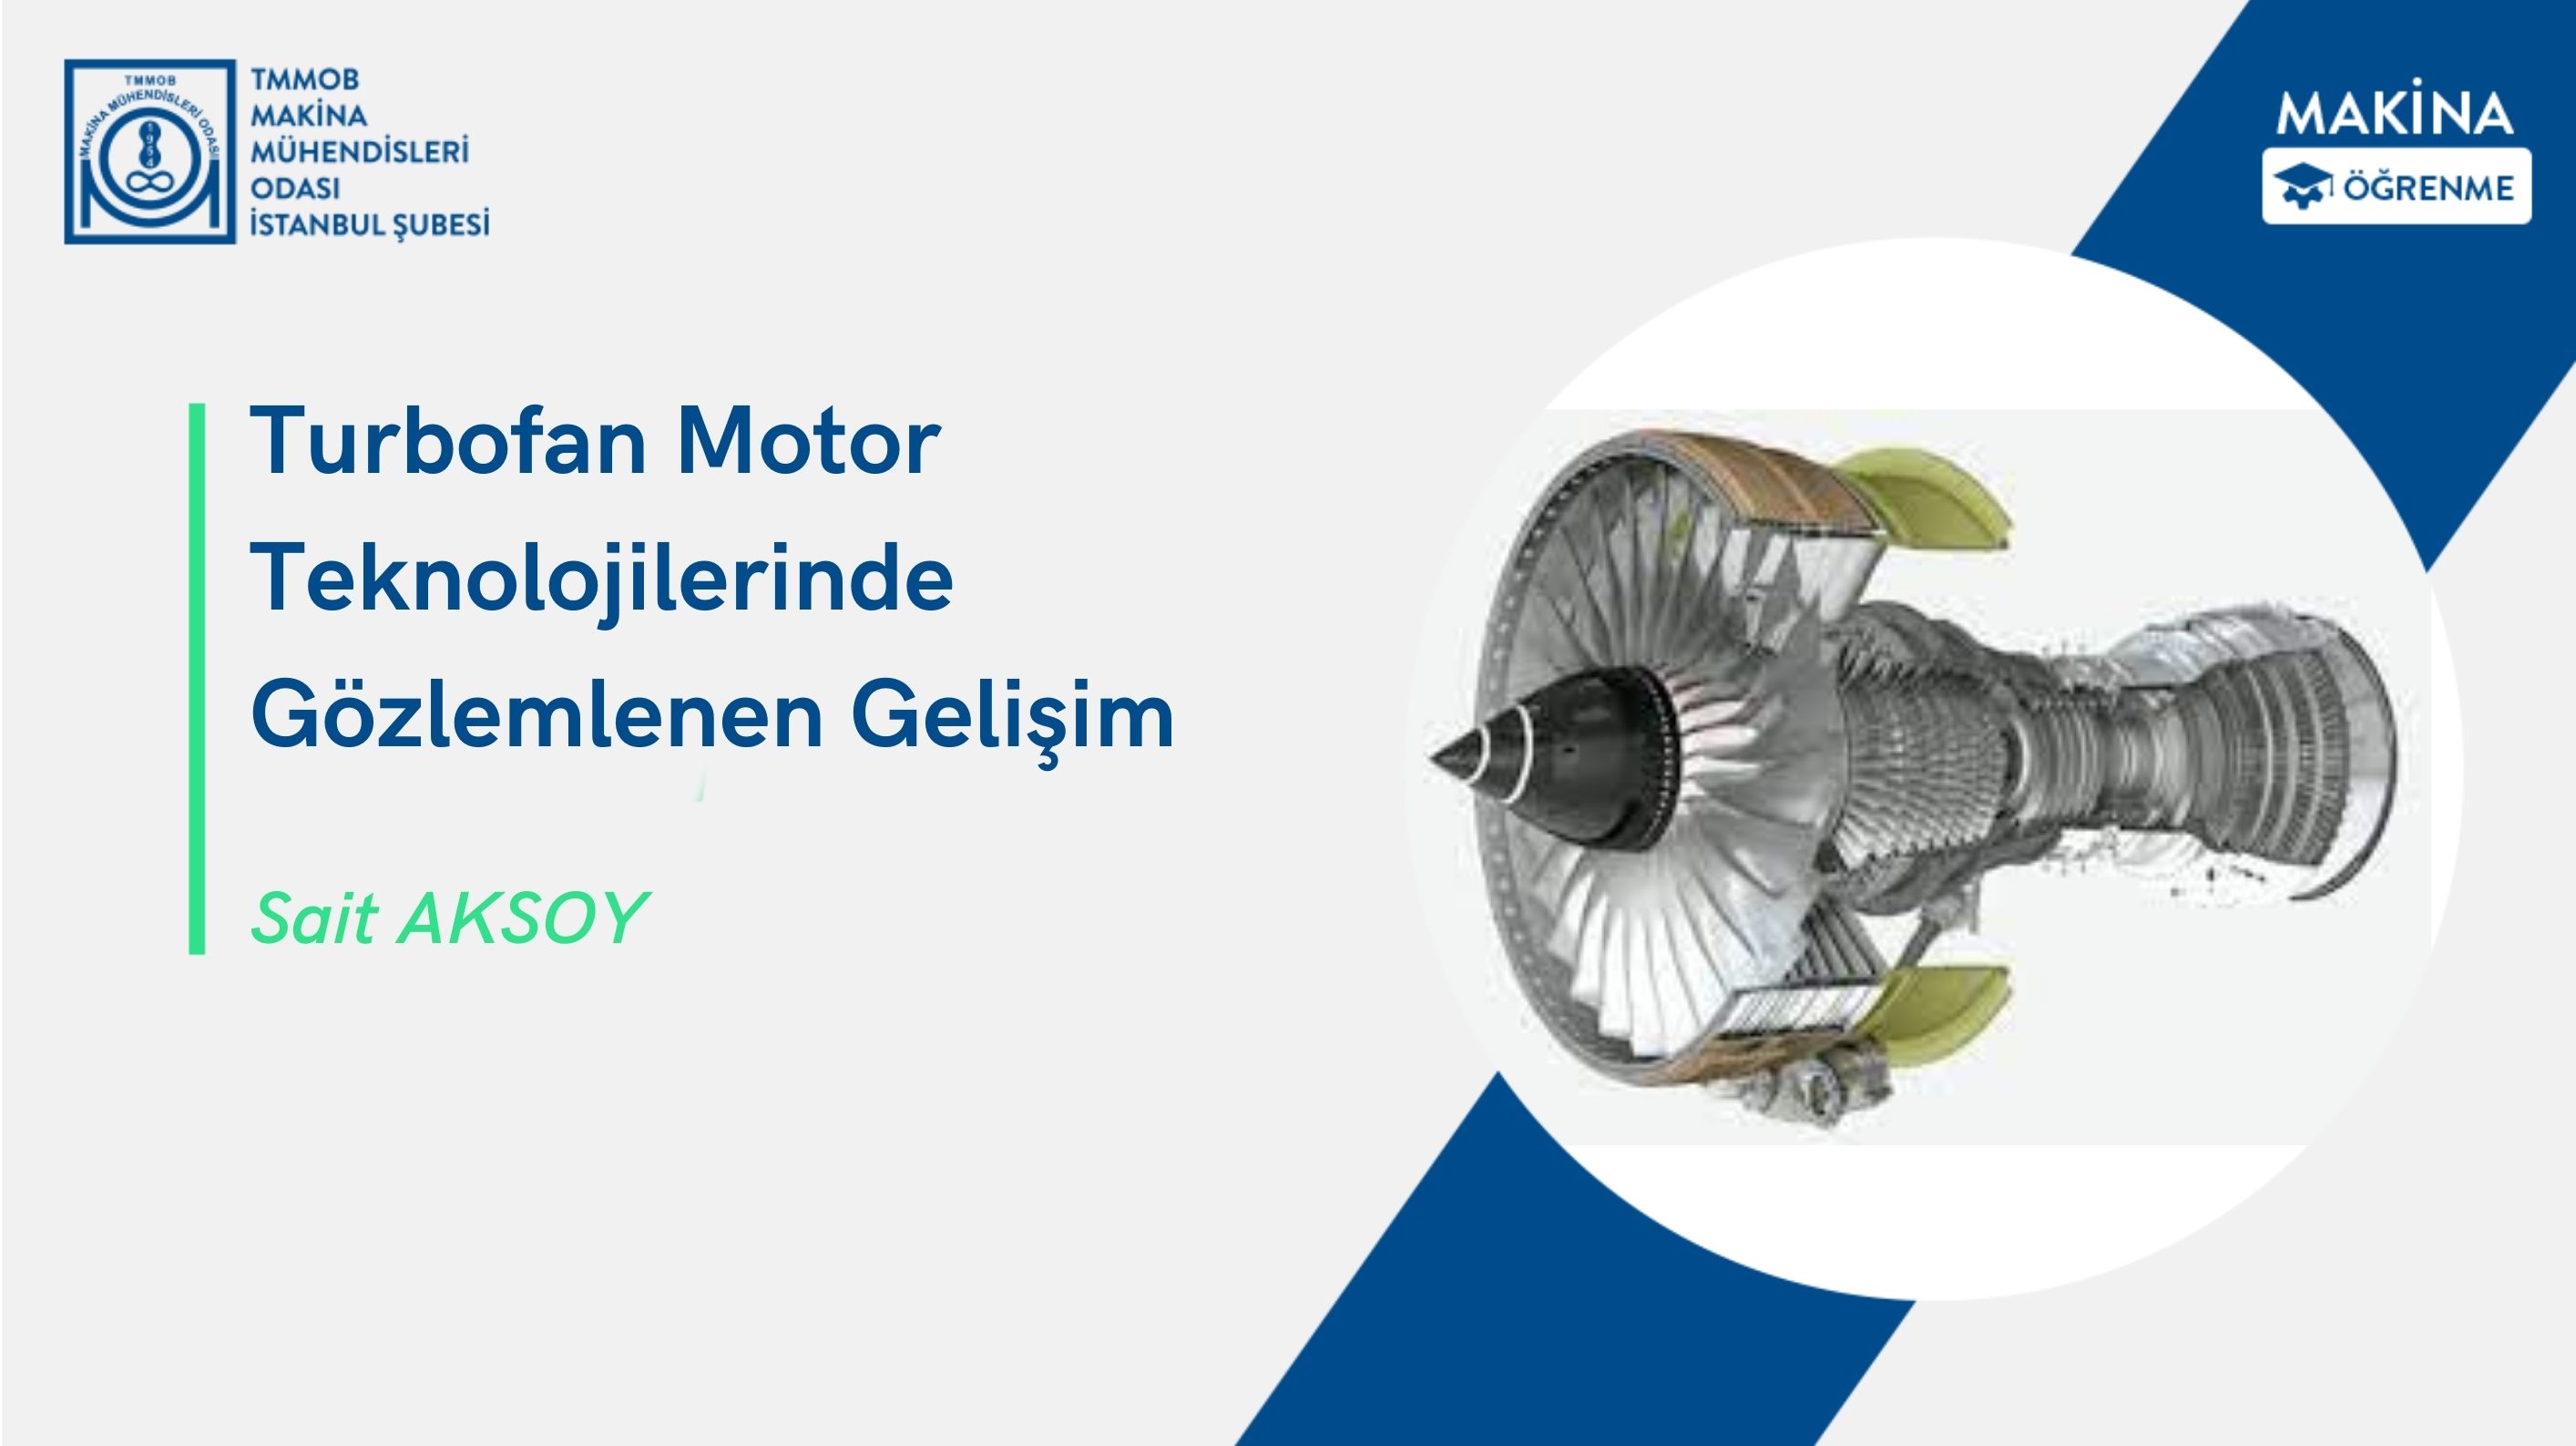 Turbofan Motor Teknolojilerinde Gözlemlenen Gelişim